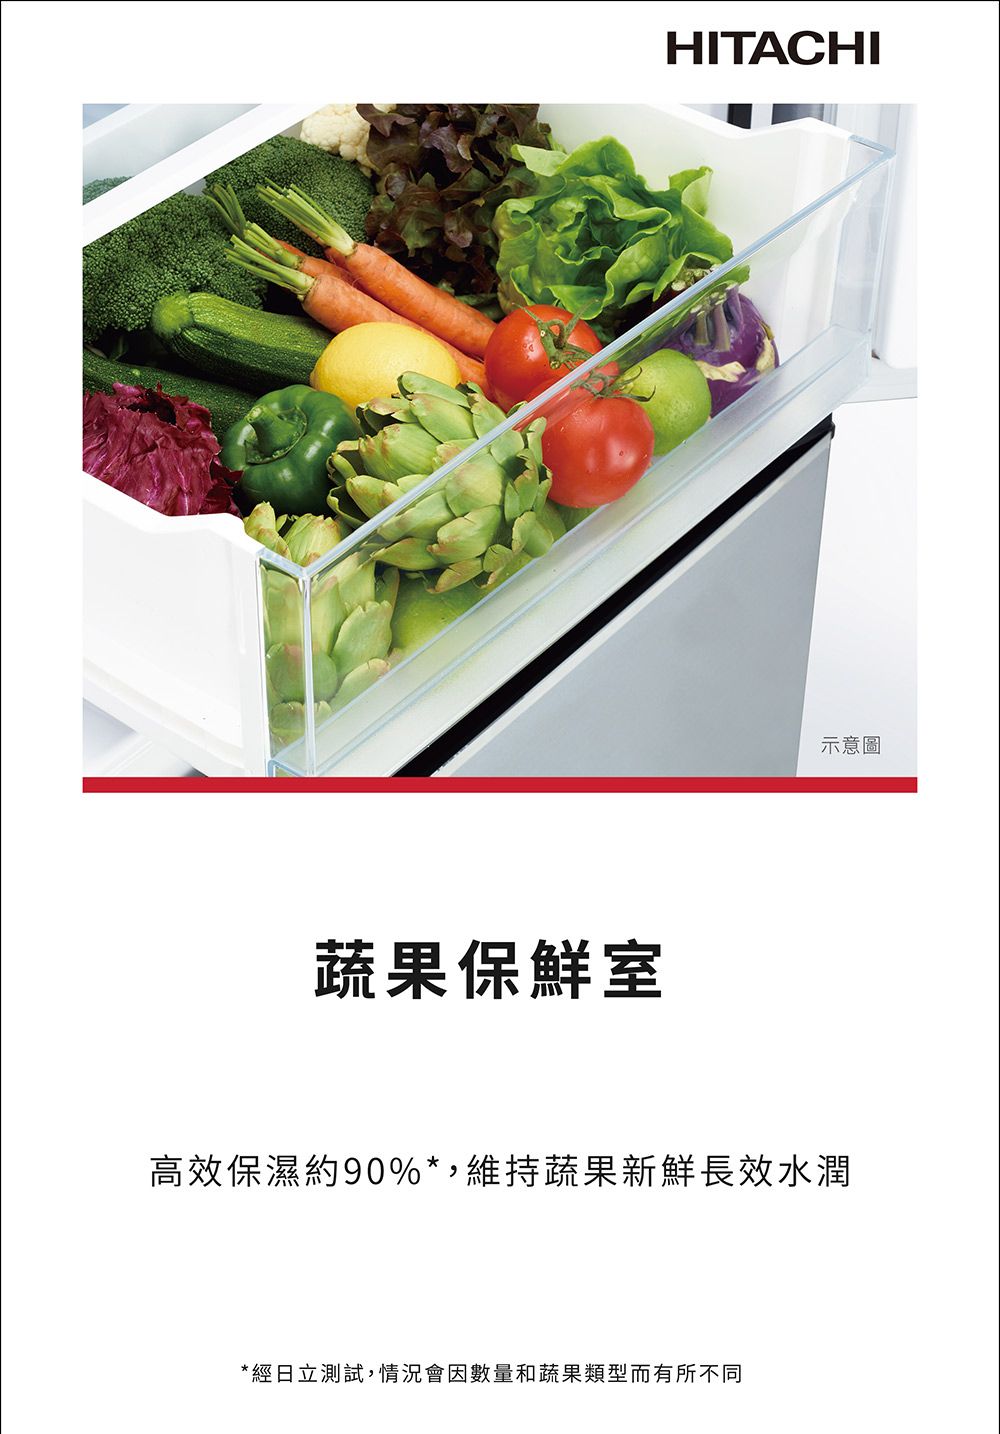 蔬果保鮮室HITACHI示意圖高效保濕約90%*,維持蔬果新鮮長效水潤*經日立測試,情況會因數量和蔬果類型而有所不同